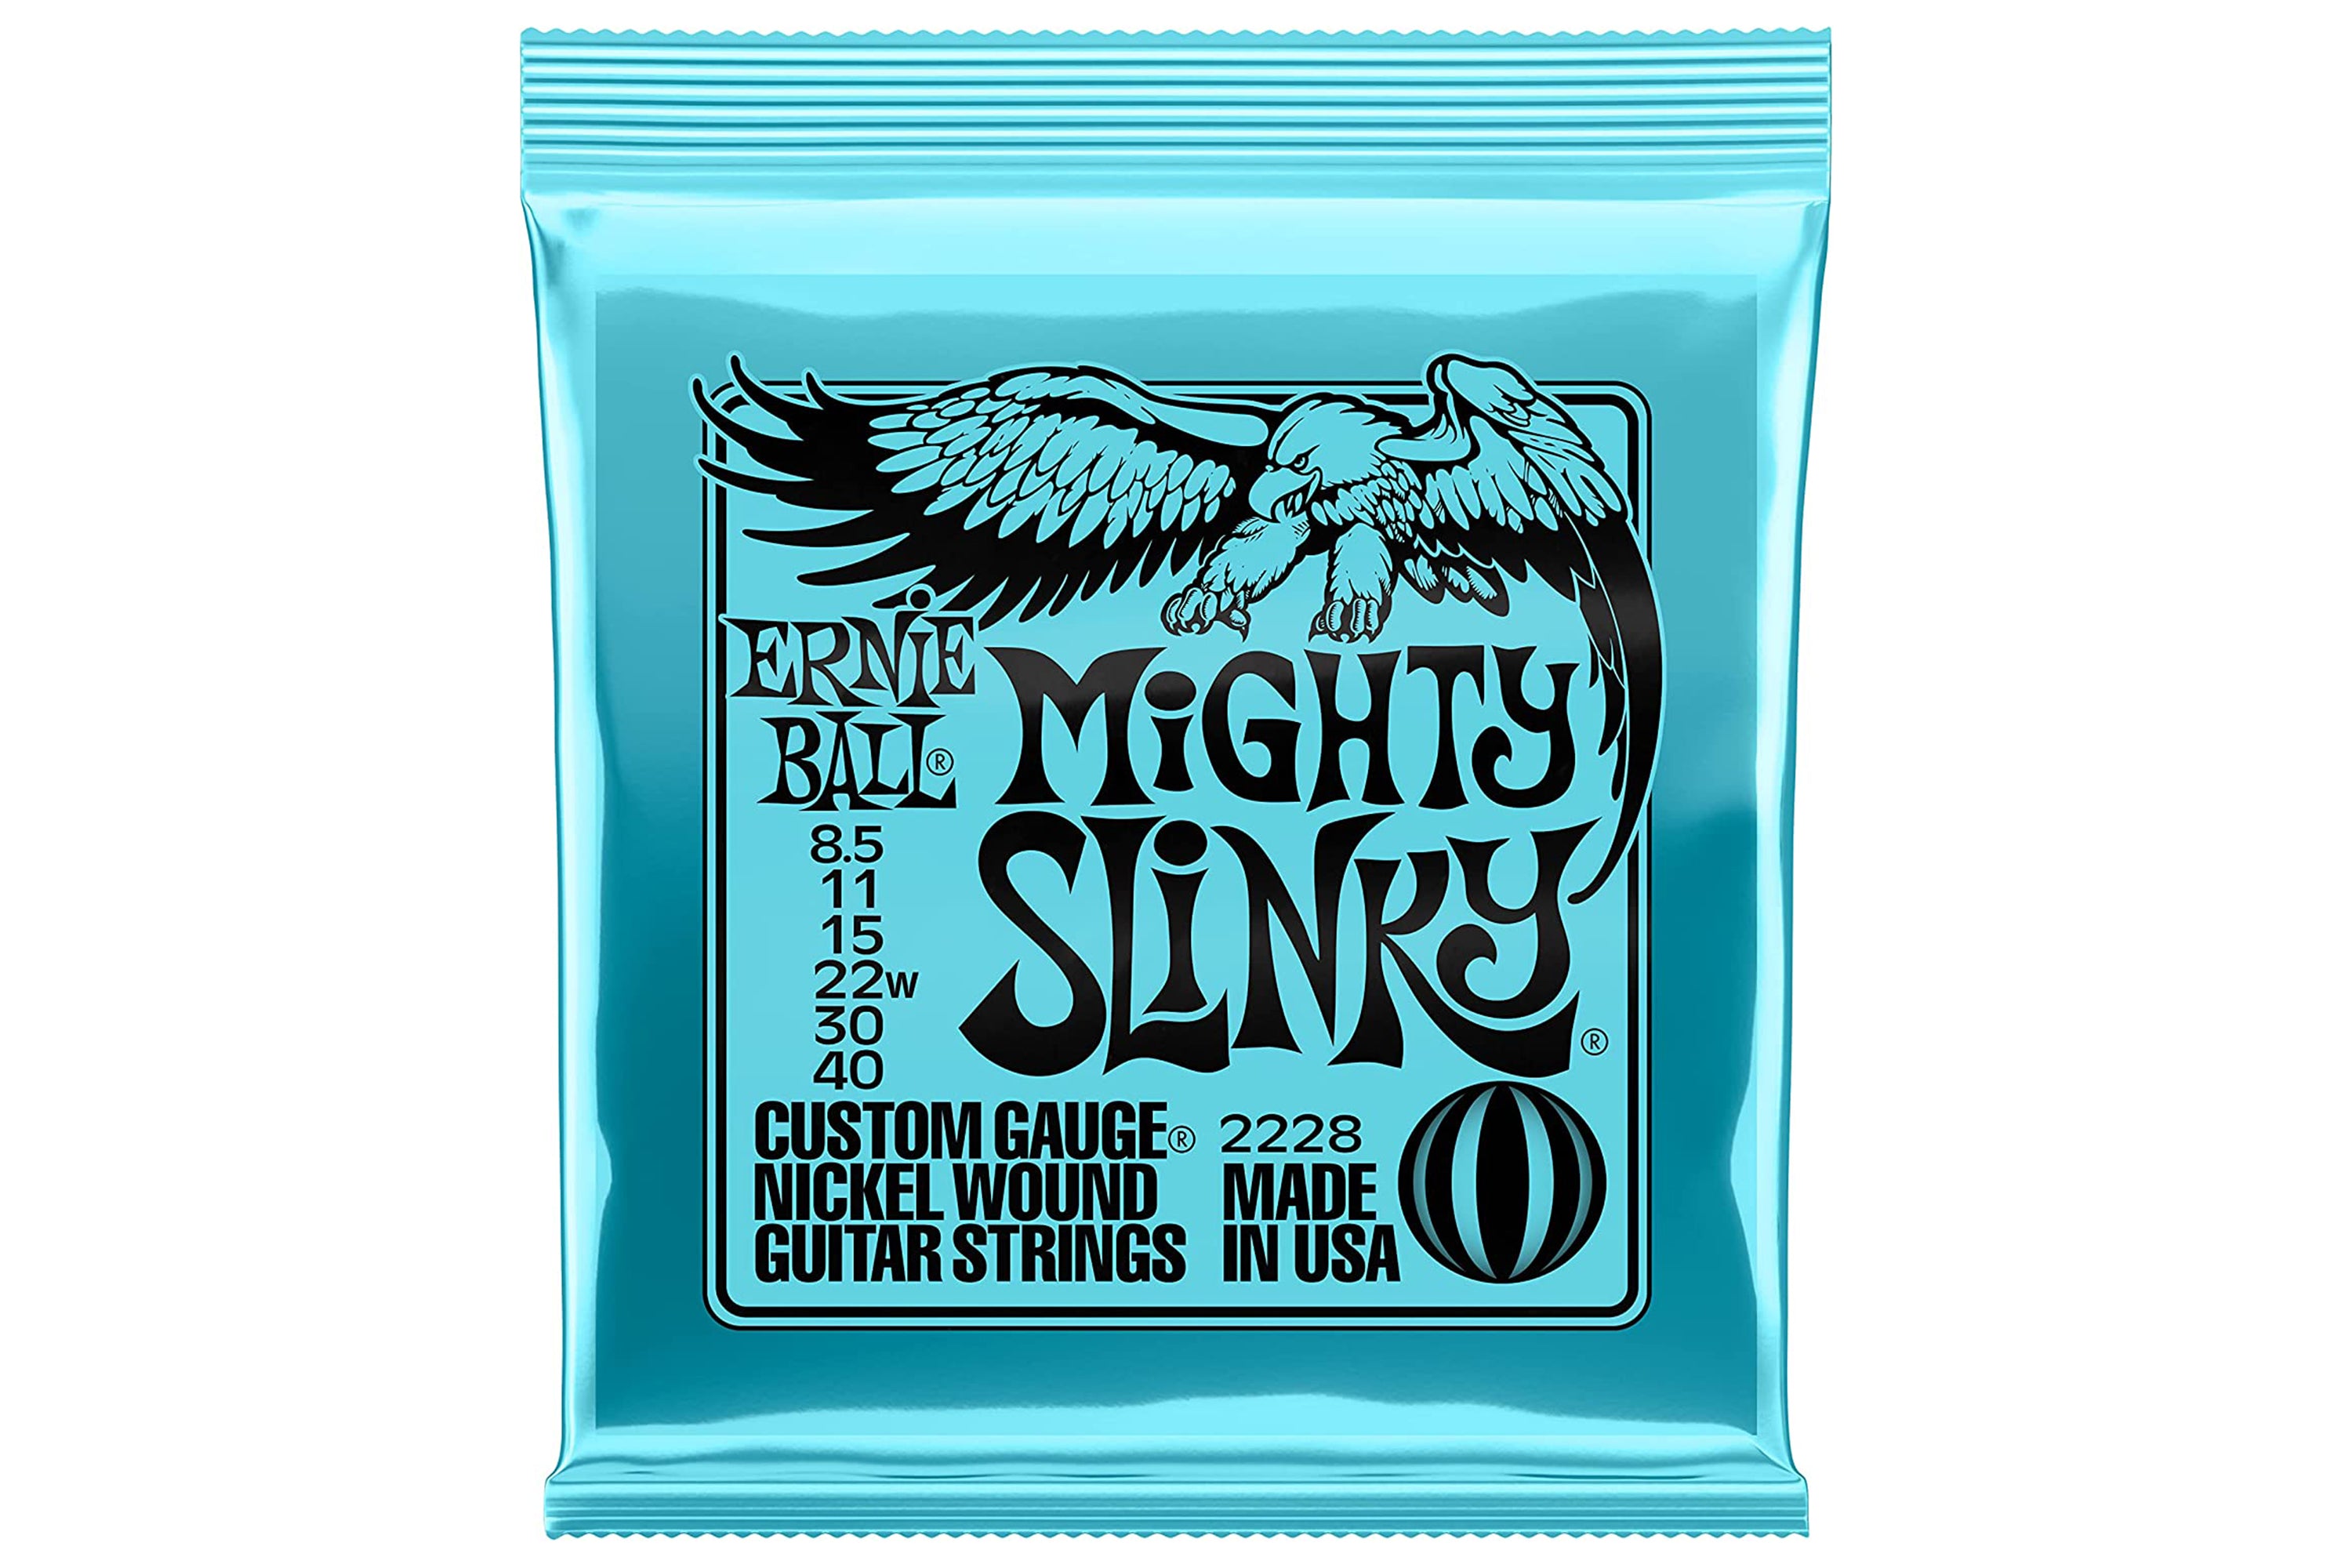 Ernie Ball Mighty Slinky Strings